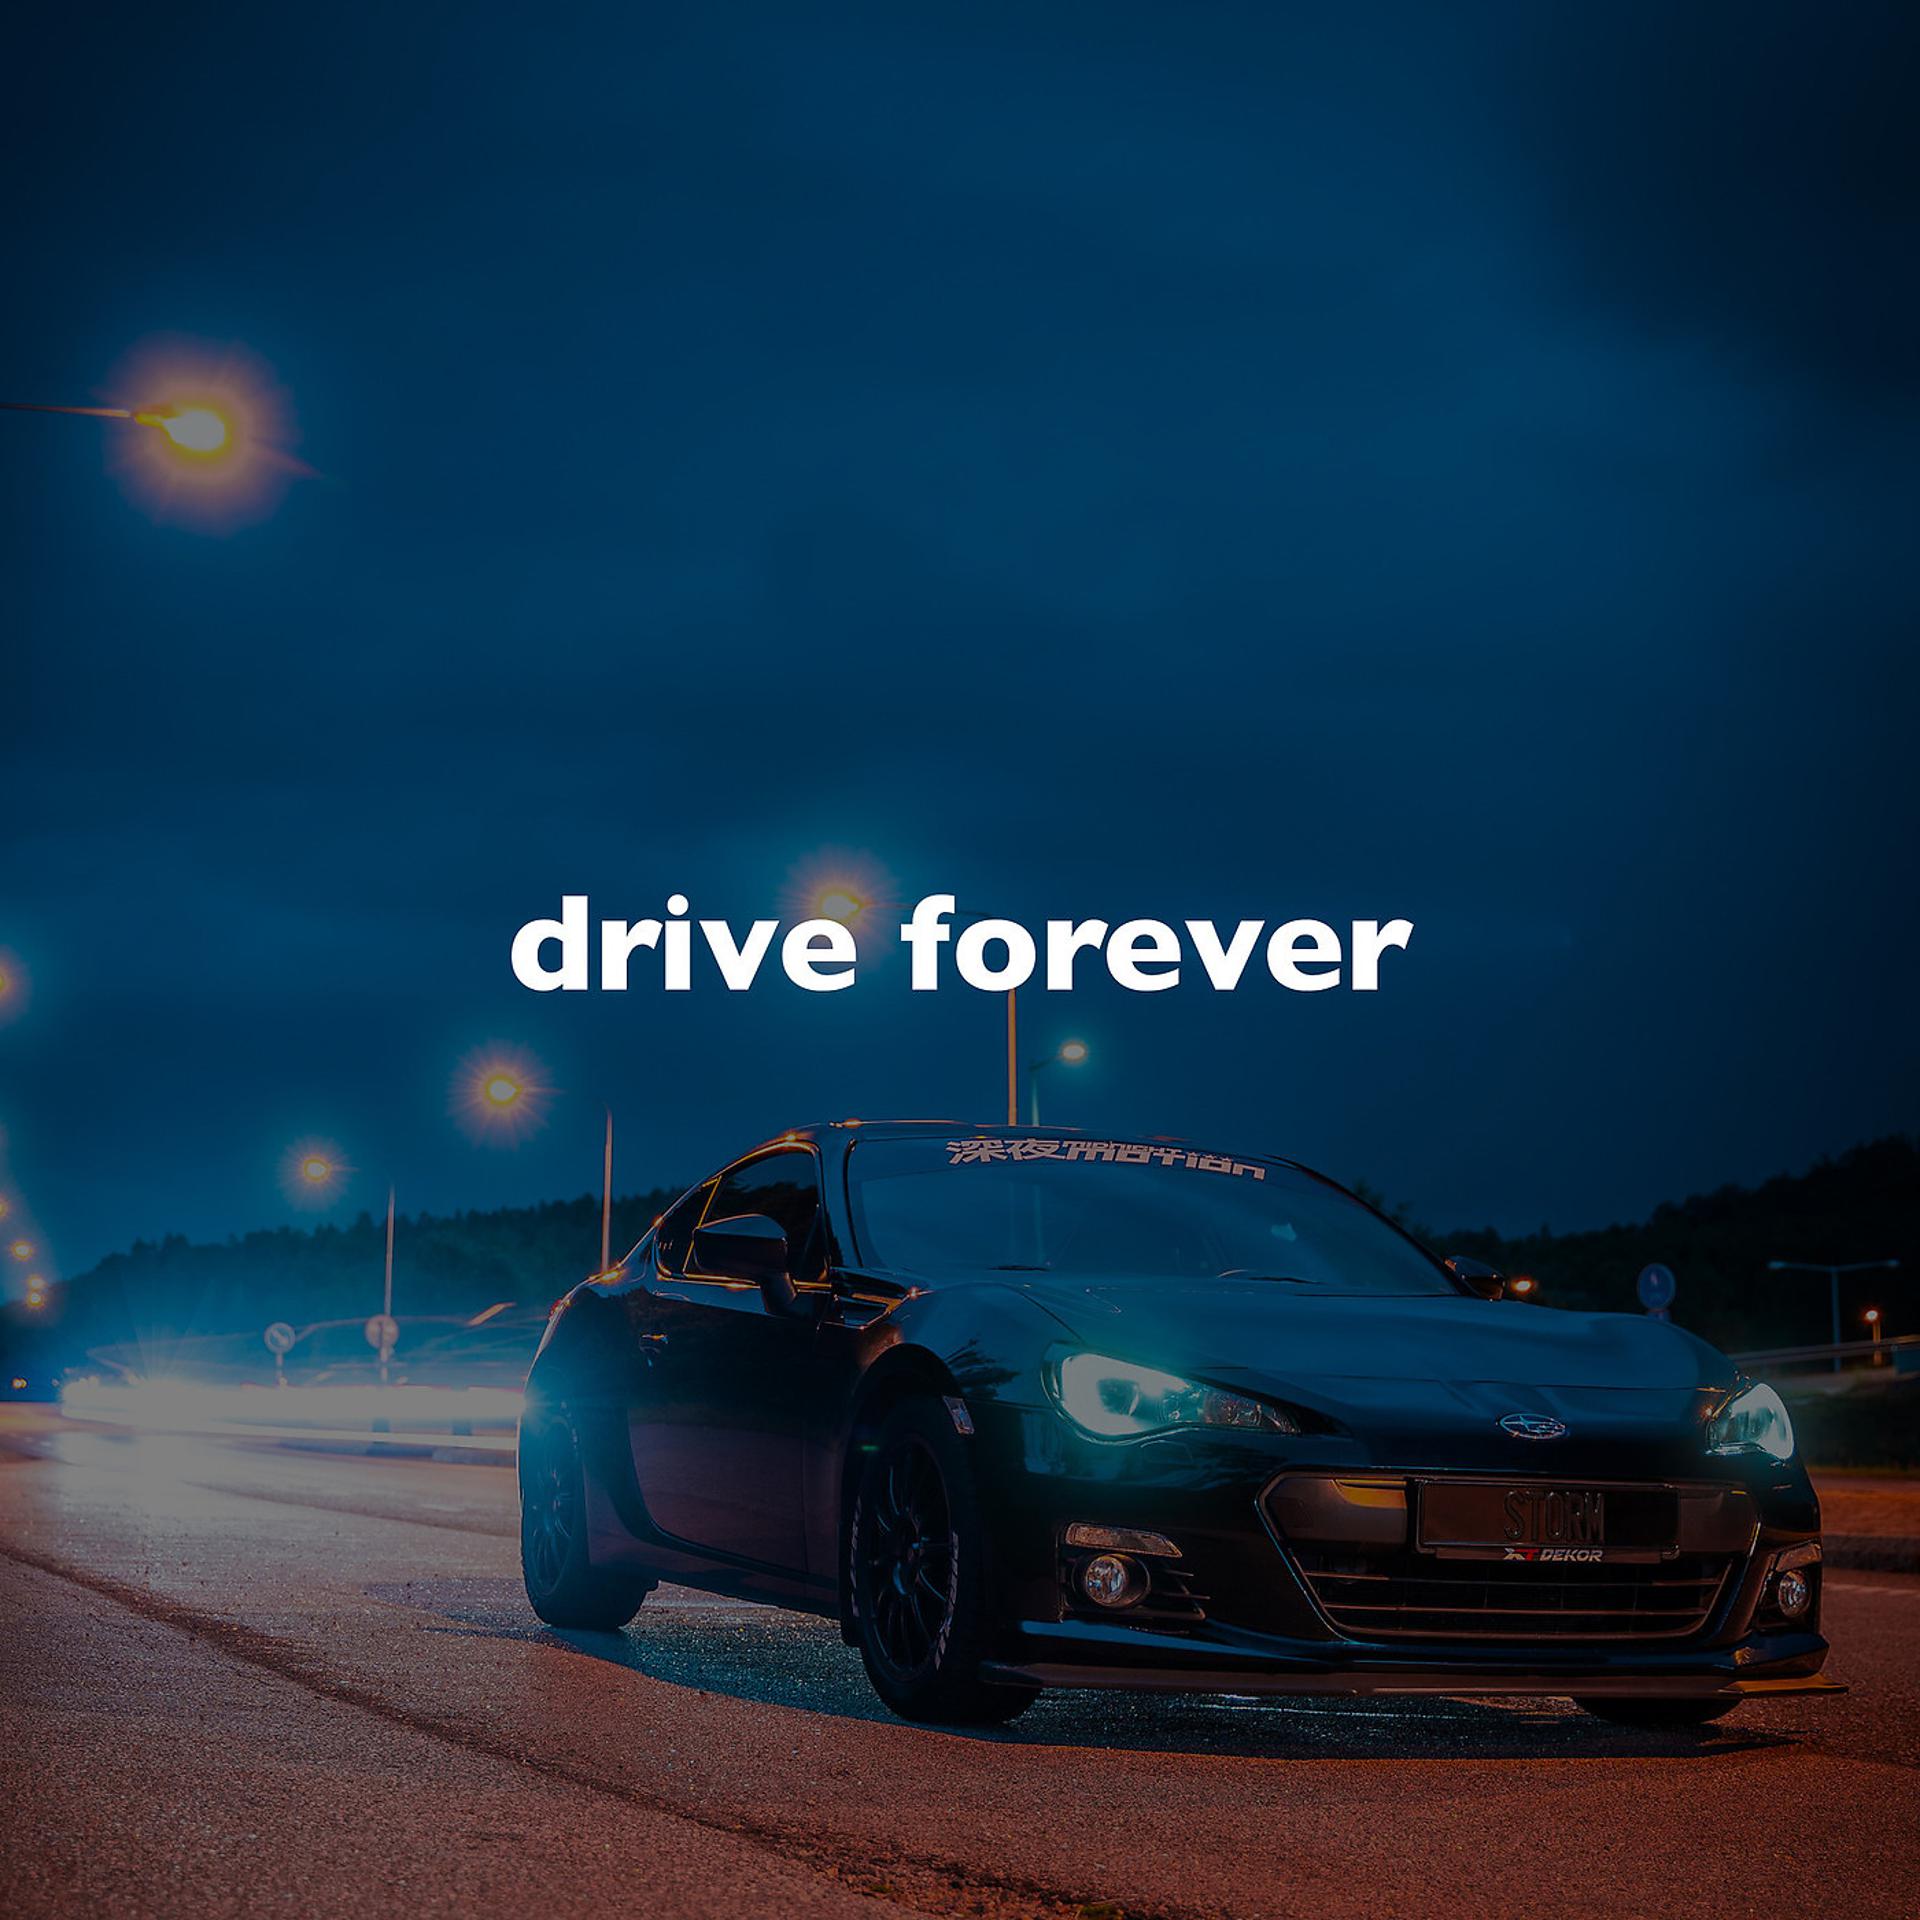 Drive forever babbeo. Drive Forever. Drive Forever Forever. Drive Forever Remix. Drive Forever Slowed.